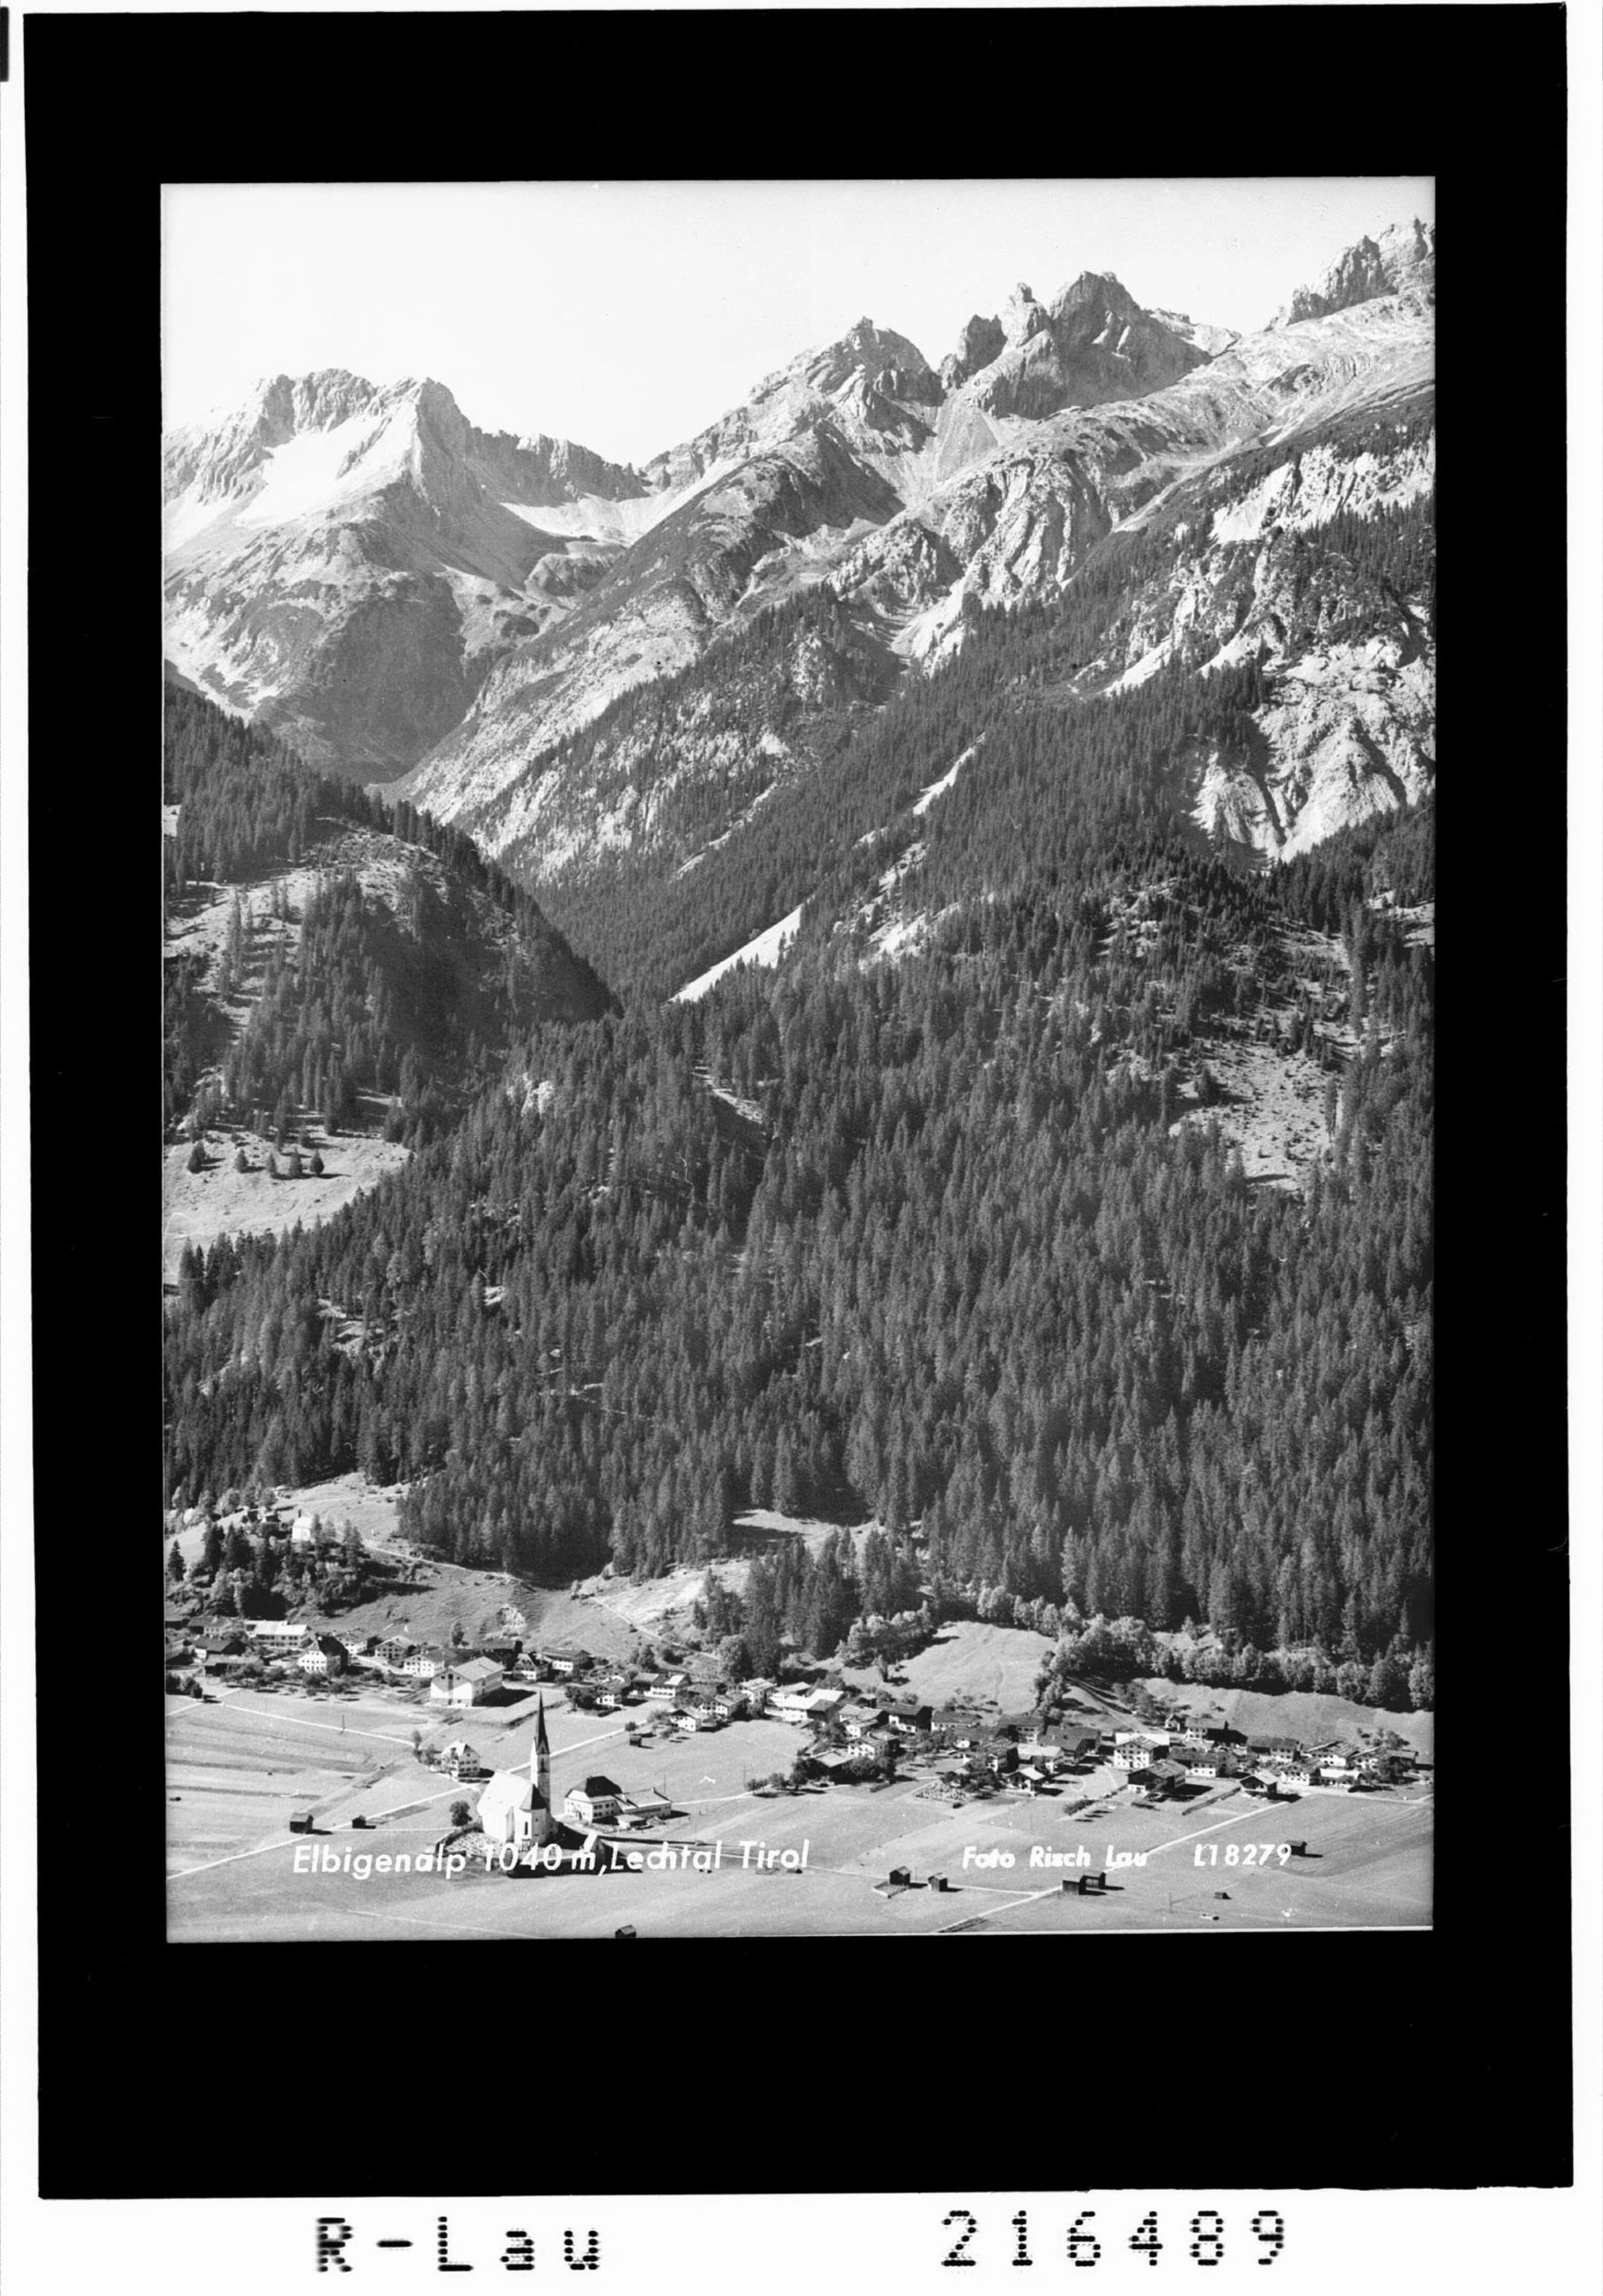 Elbigenalp 1040 m, Lechtal Tirol></div>


    <hr>
    <div class=